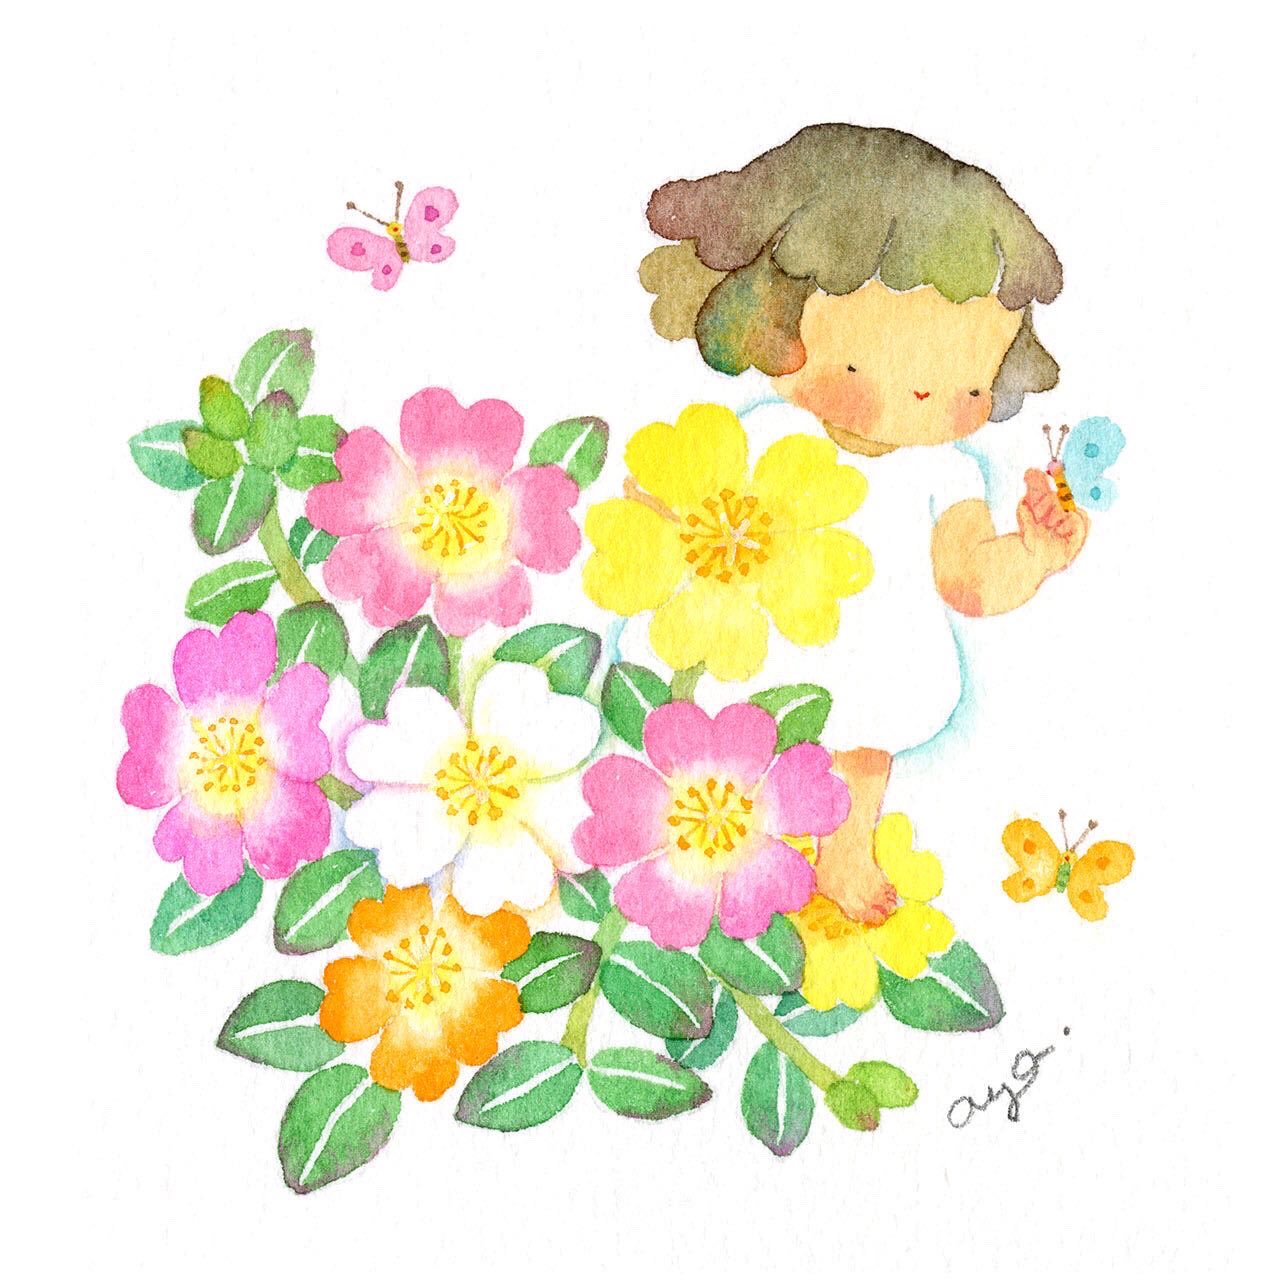 こばやしあや No Twitter 今日の誕生花 7月16日 ポーチュラカ Green Purslane ポーチュラカ全般の花言葉 いつも元気 カラフルなお花でうちのお庭にもおばあちゃんが植えてました 絵 水彩画 イラスト Illustration Watercolor 花言葉